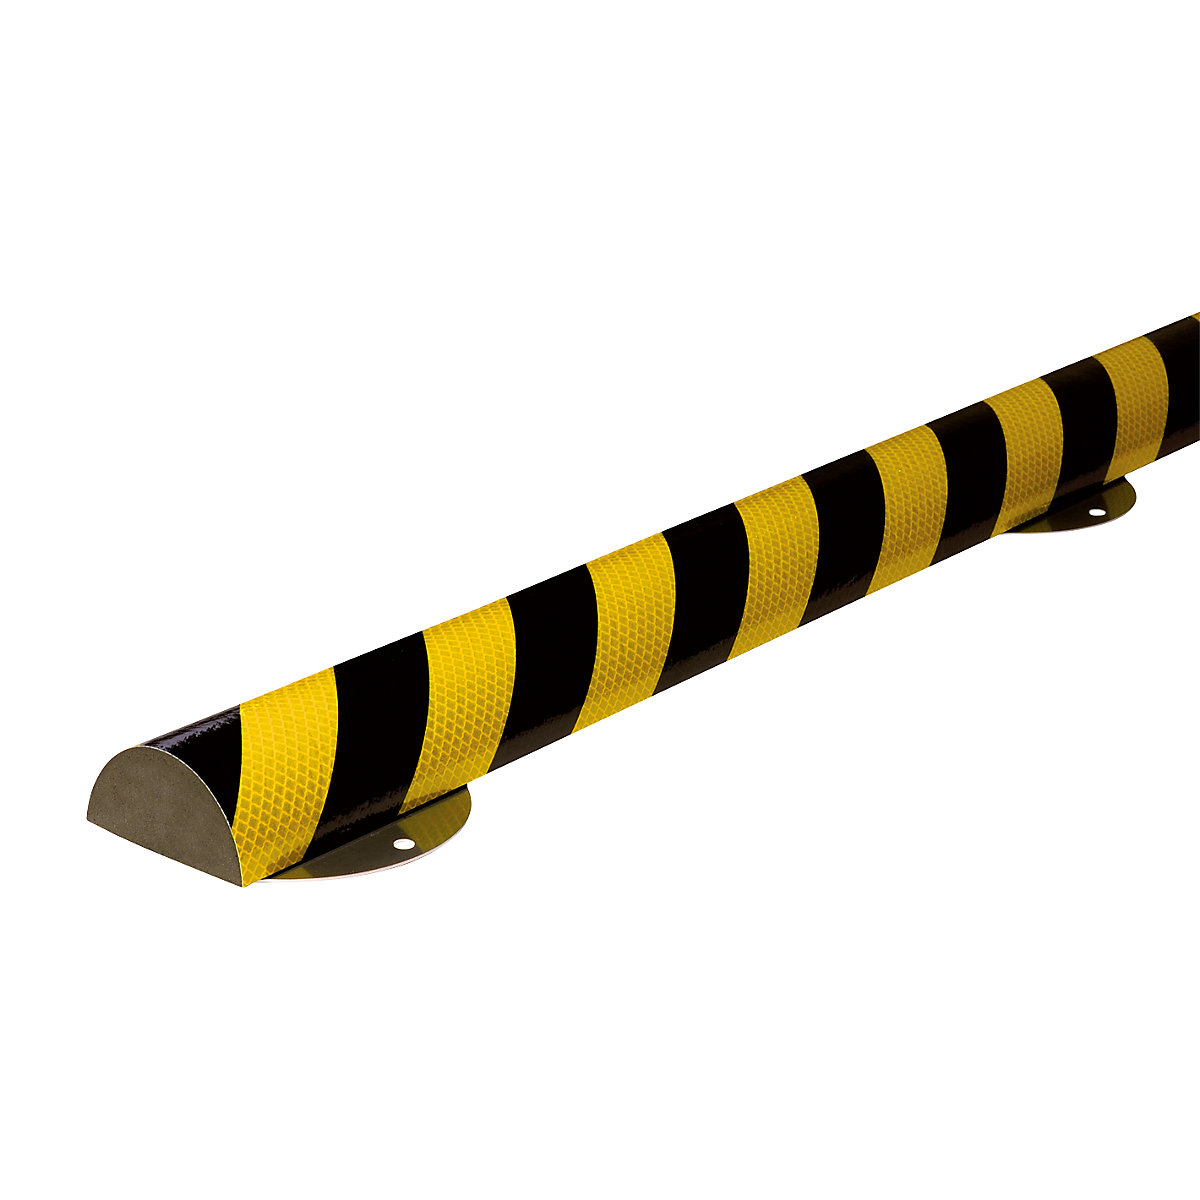 SHG – Protecție pentru suprafețe Knuffi® cu șină de montaj, tip C+, bucată de 1 m, galben / negru, reflectorizant